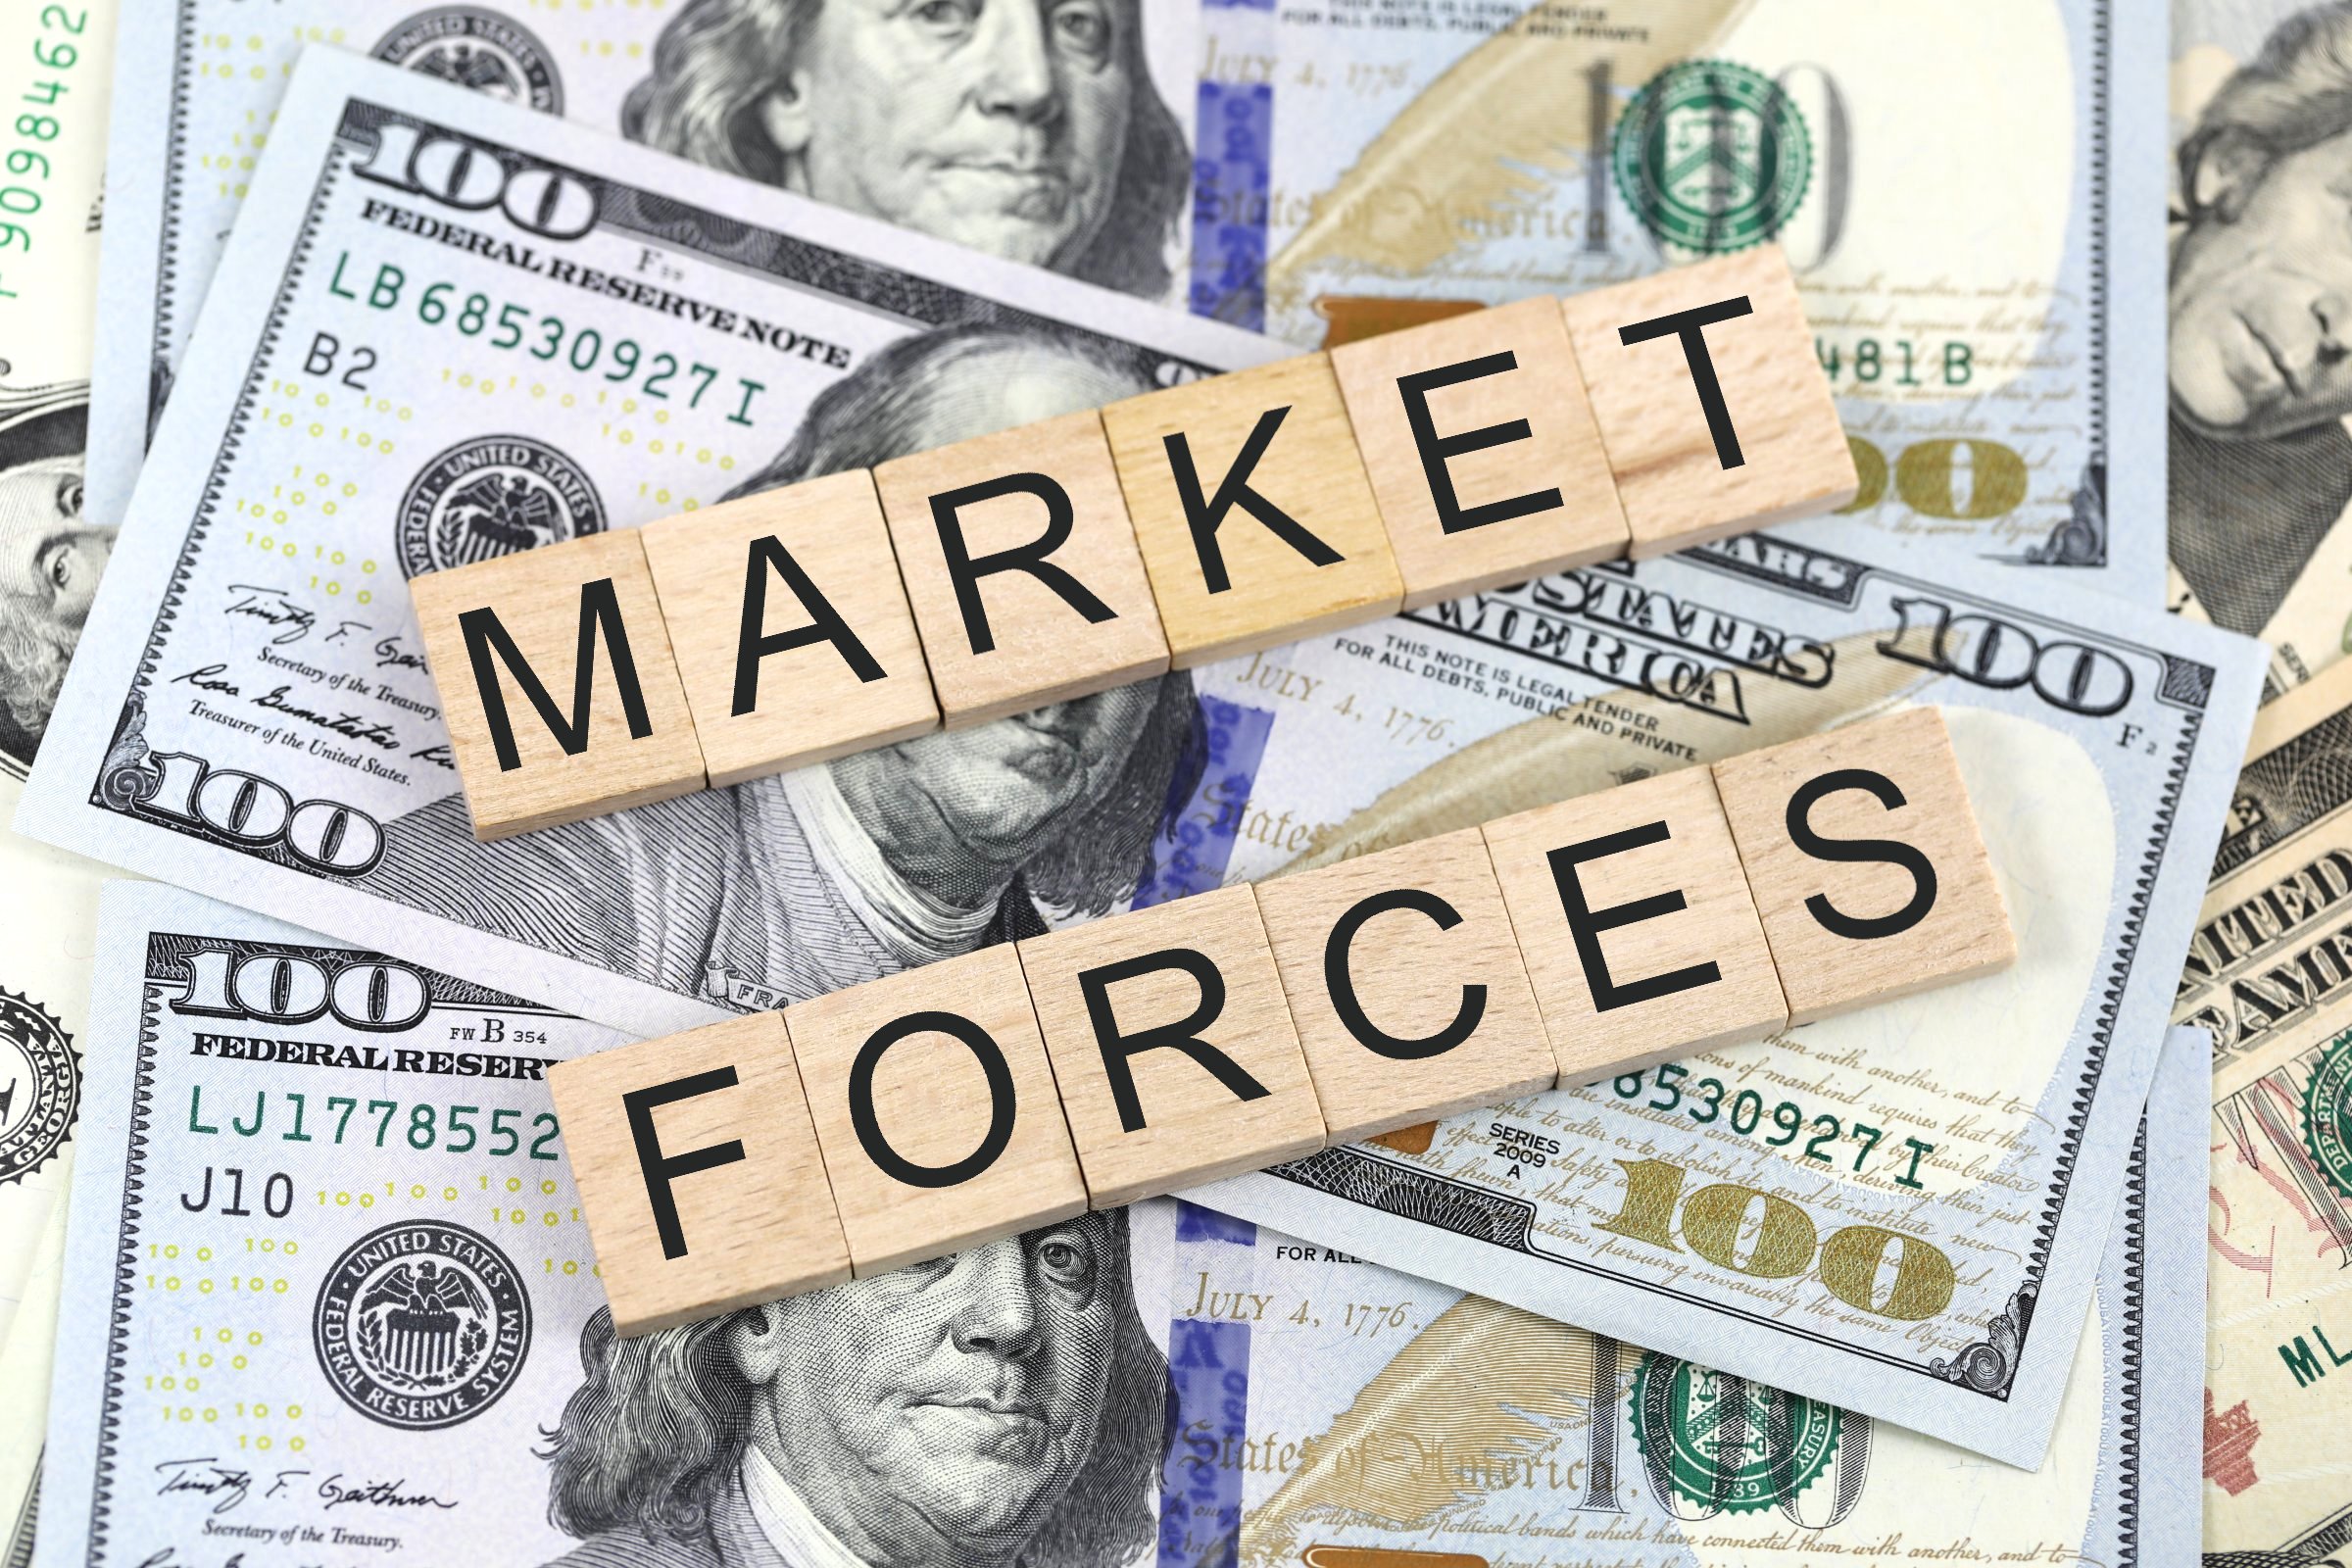 market forces